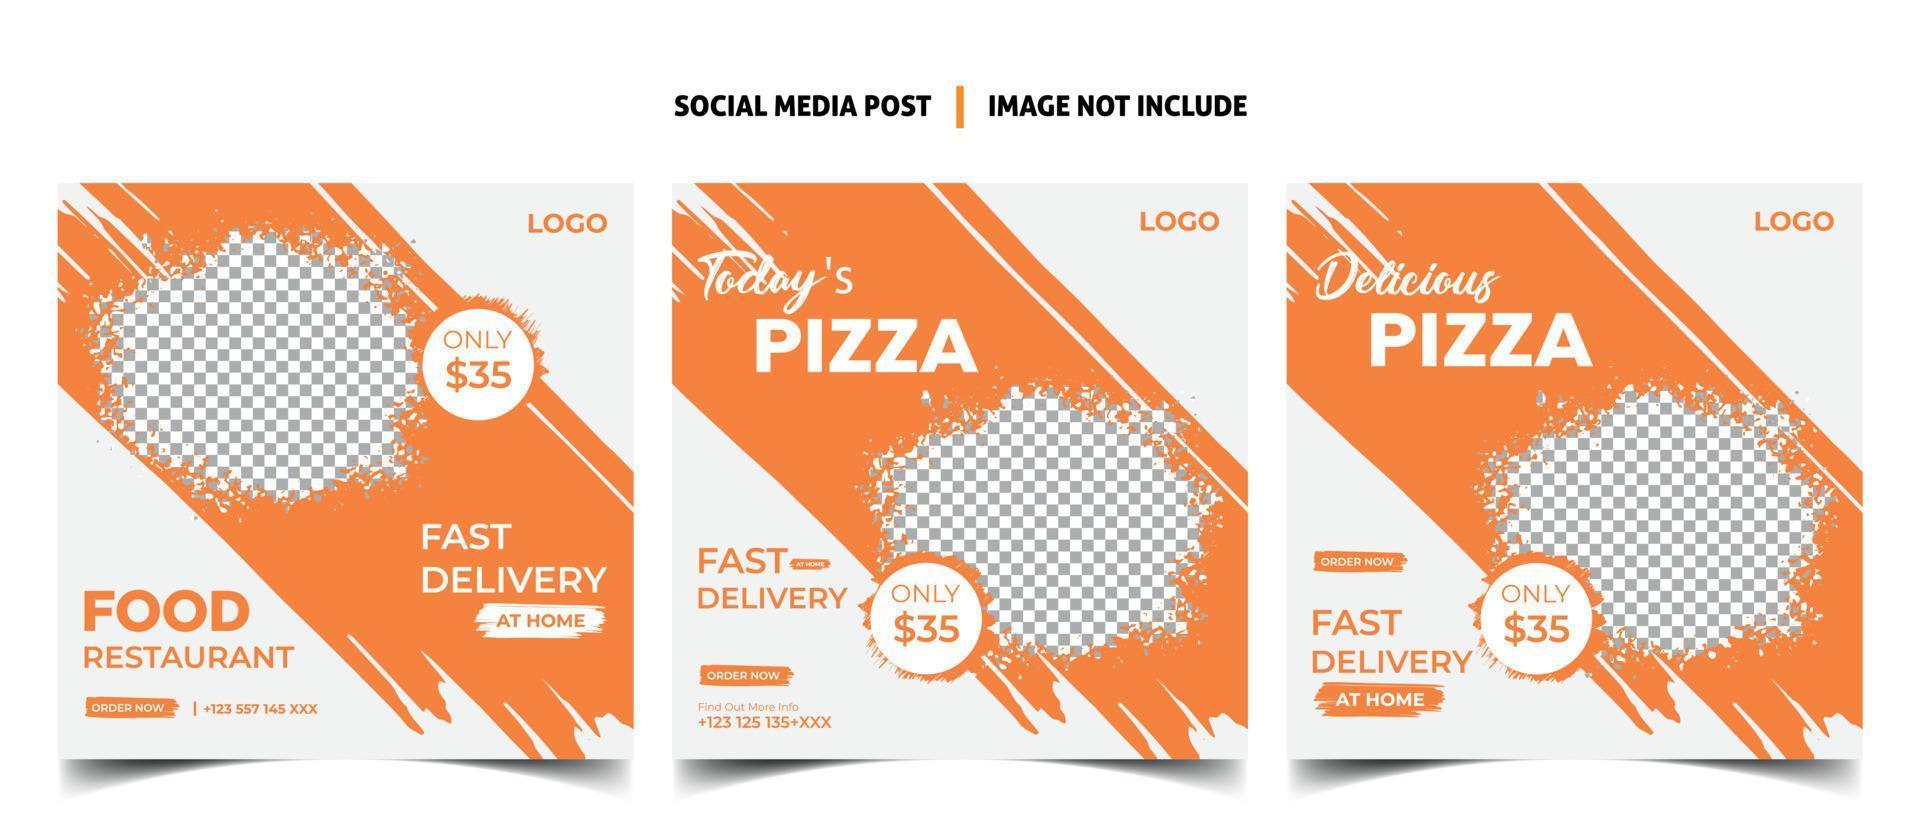 social media post template for food menu promotion banner frame vector